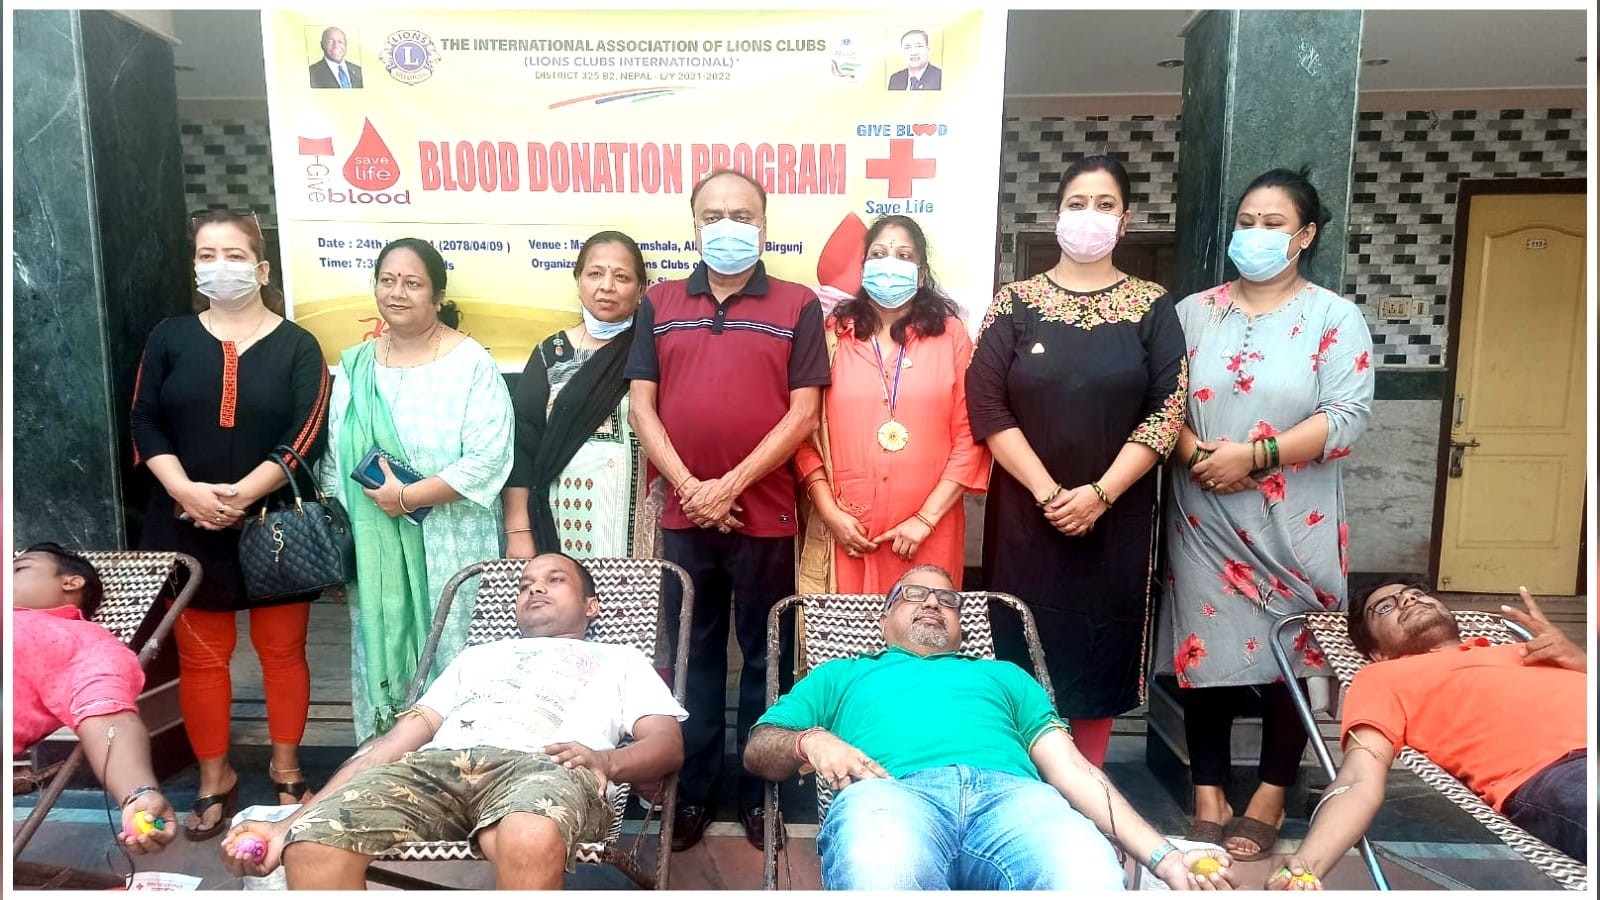 लायन्स क्लबको रक्तदान कार्यक्रममा १३ महिला सहित ८७ जनाद्वारा रक्तदान